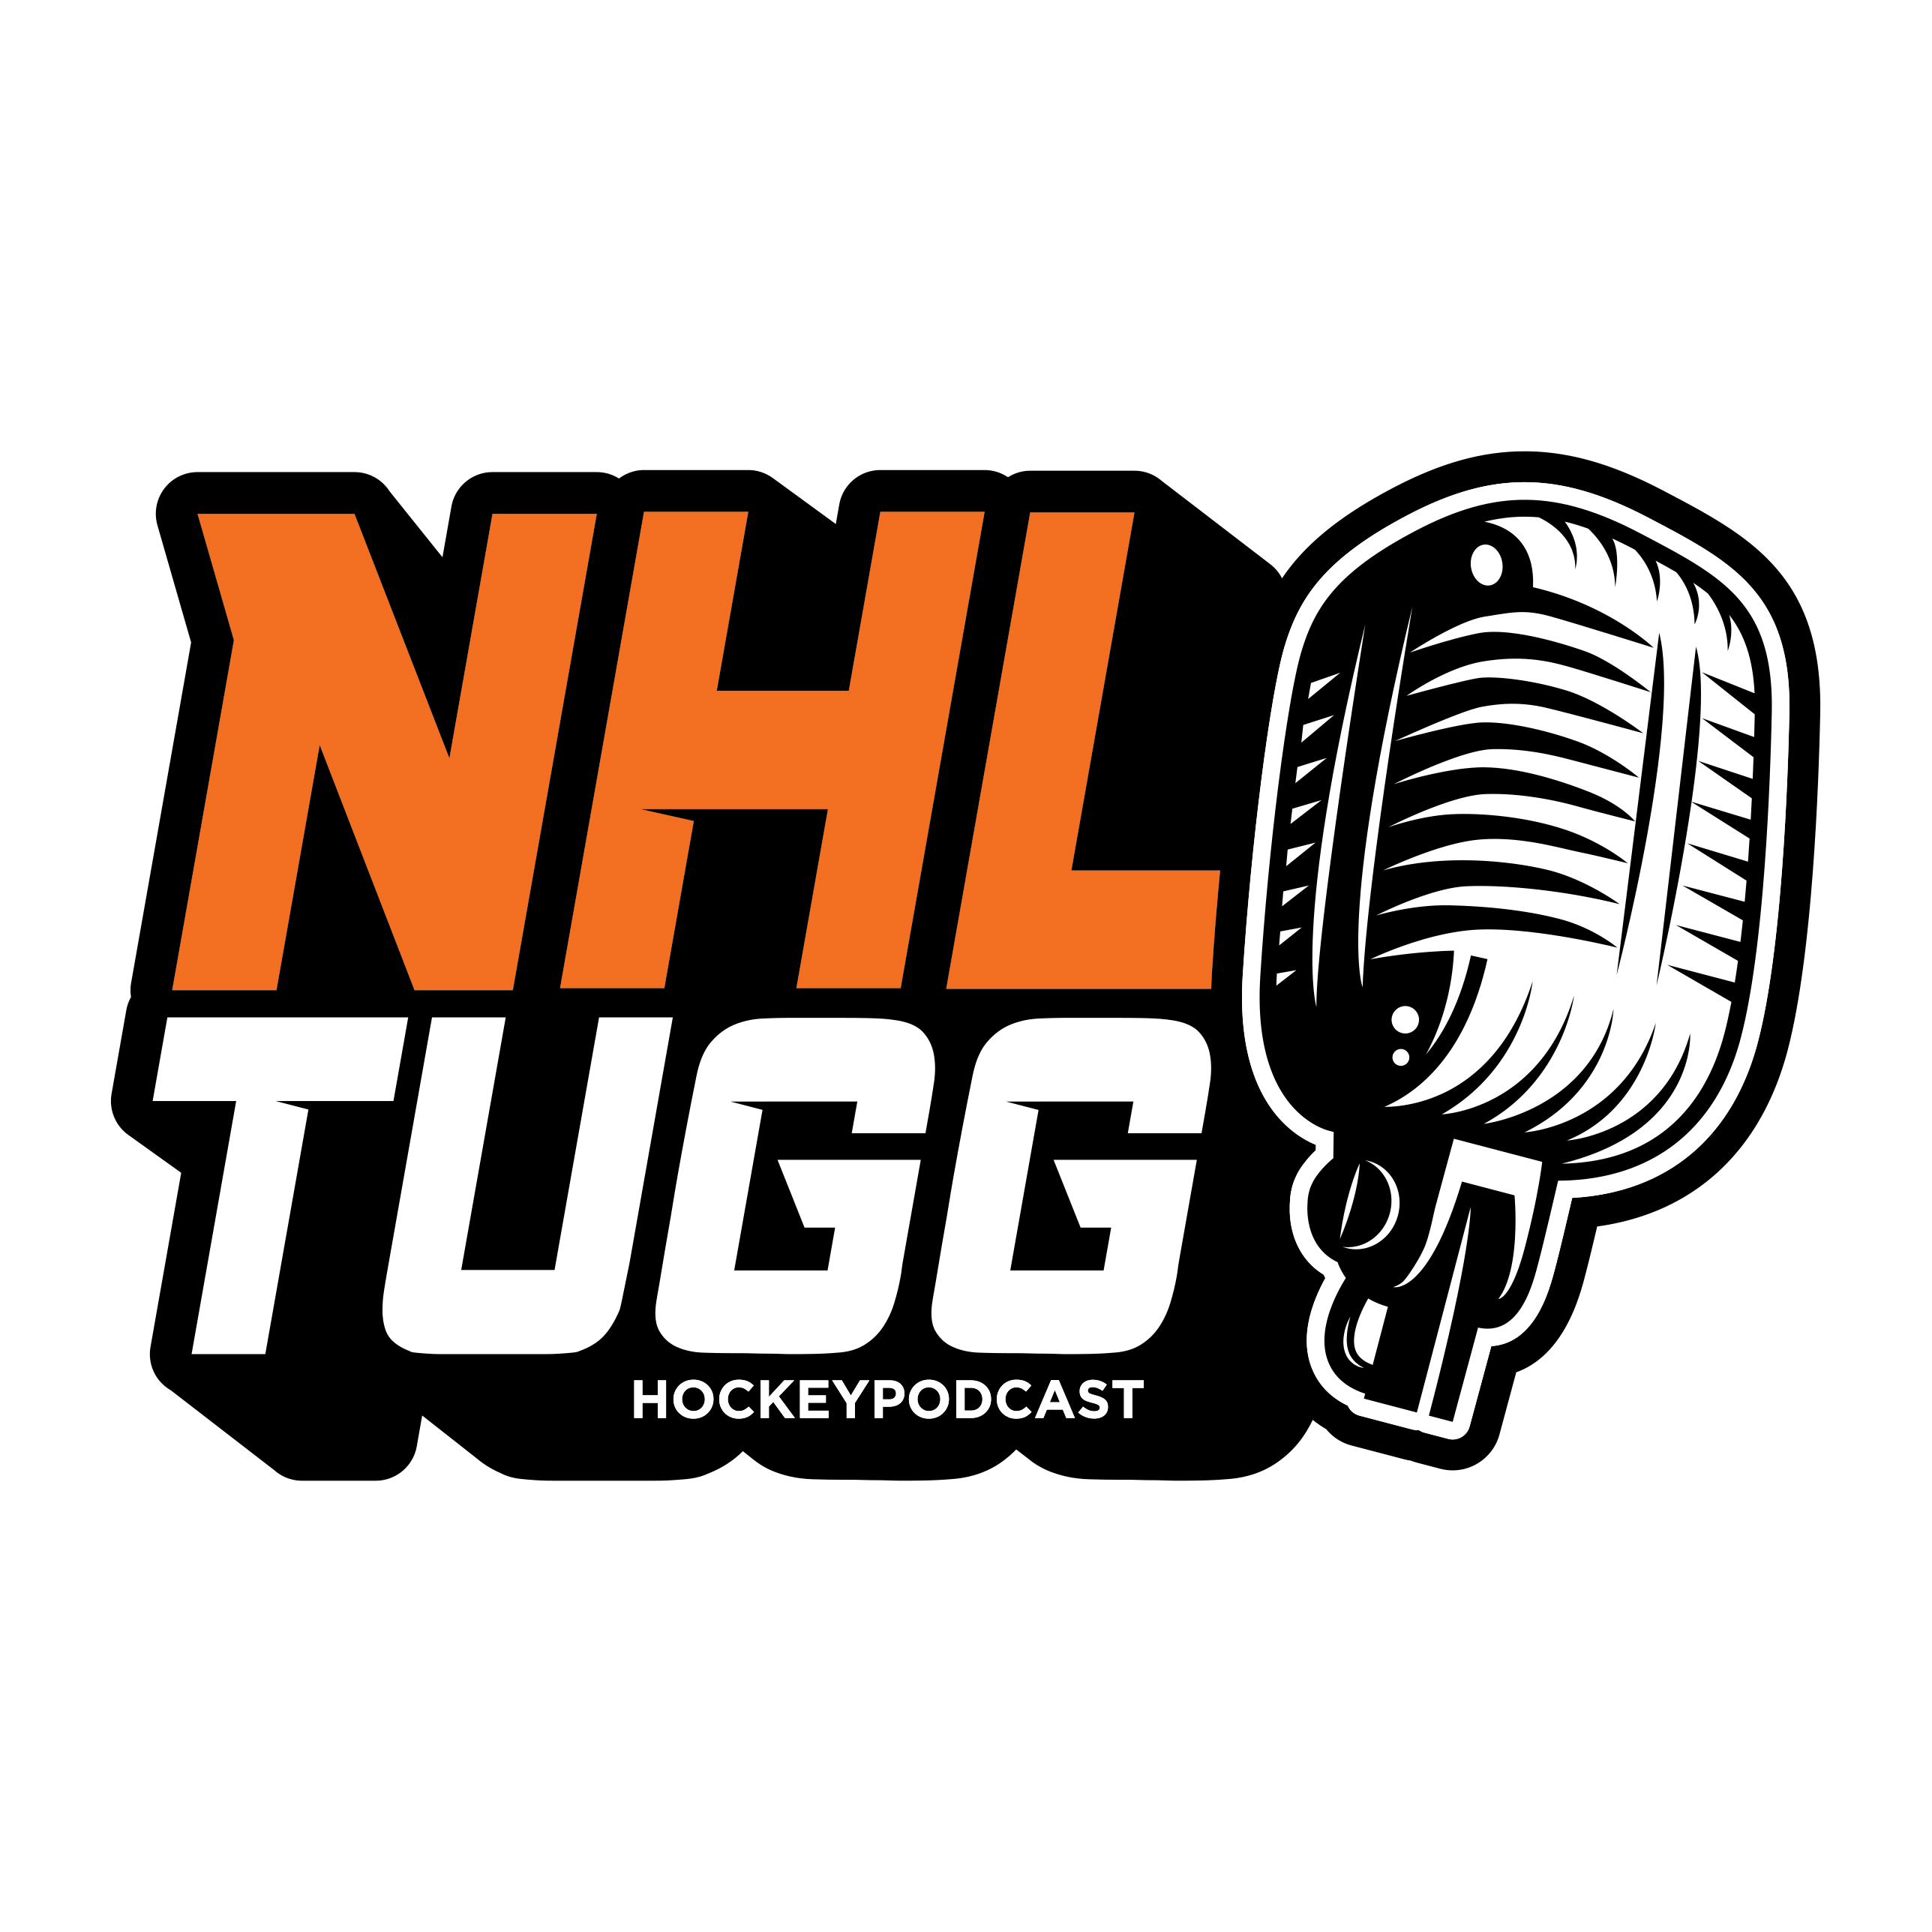 NHL-Tugg avsnitt 93 ”Vem får ihop bästa laget?”